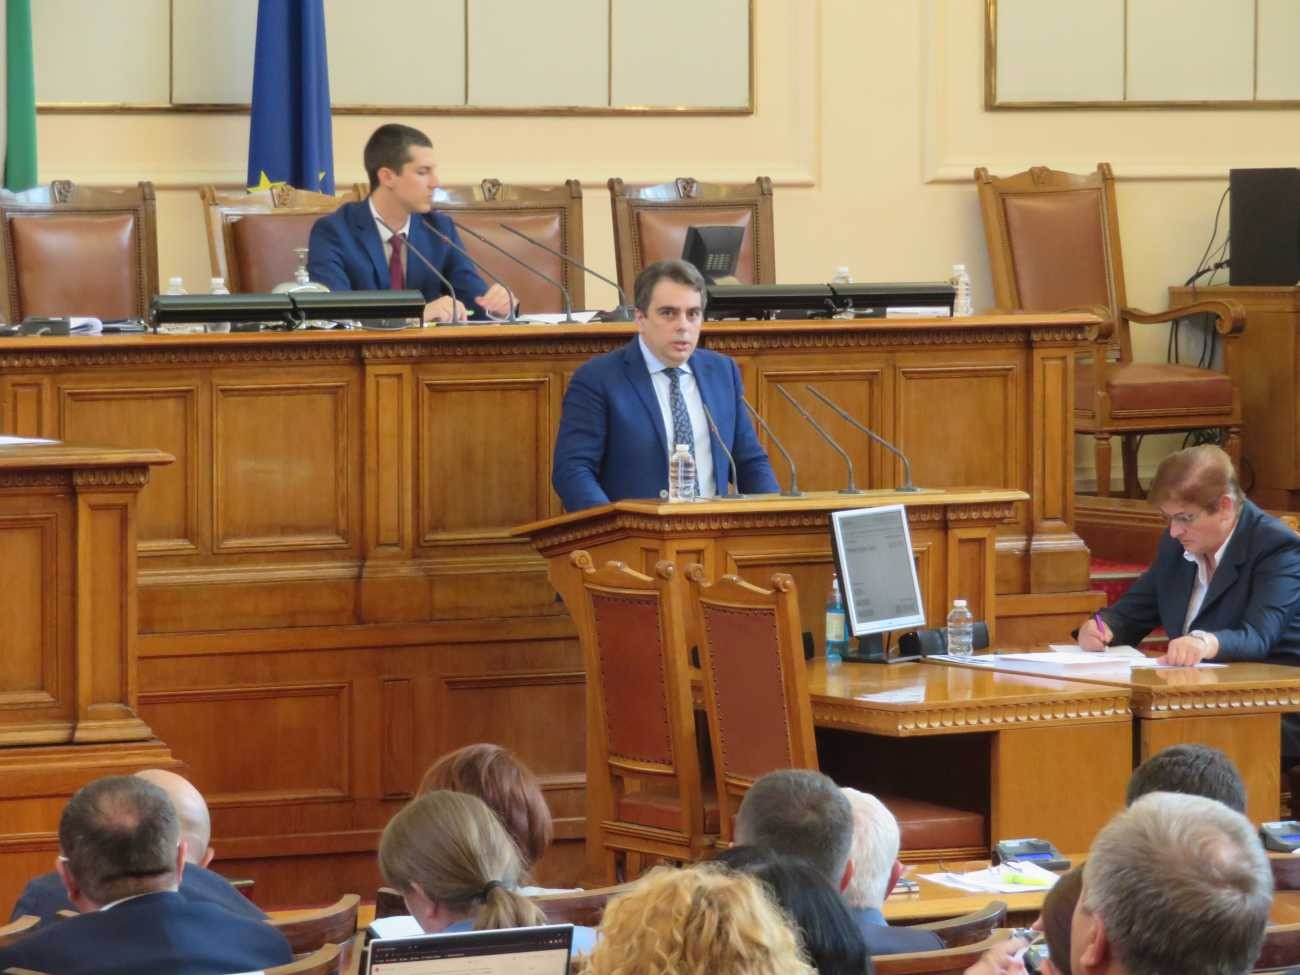 Асен Василев скандализира депутатите с ,,да го духат бедните,, - това било философия на ГЕРБ